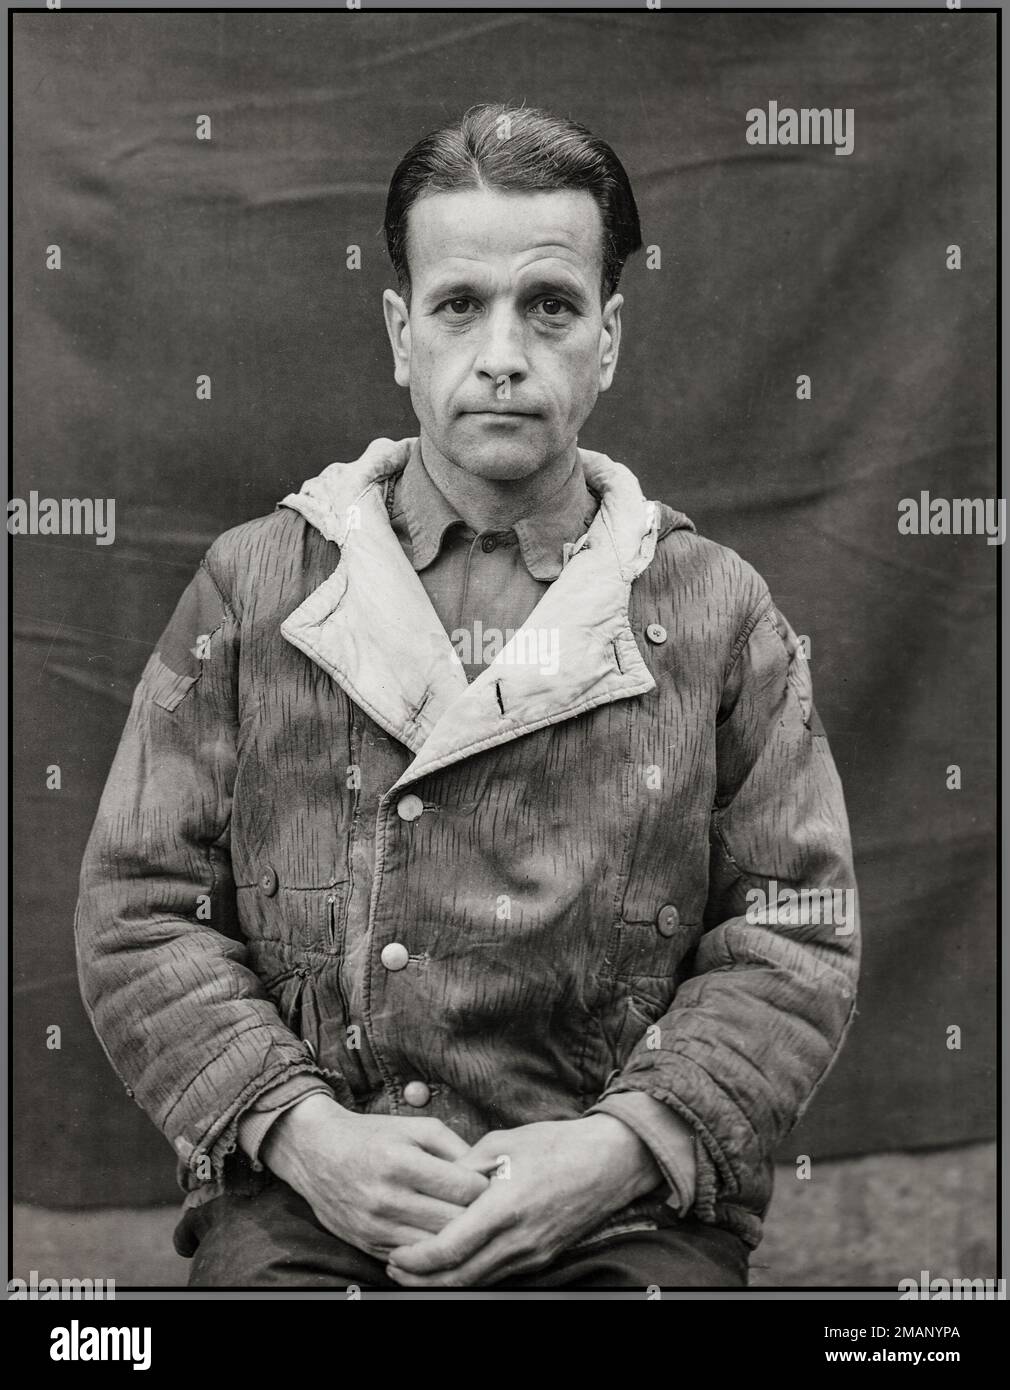 Nazi Waldemar Hoven (10 février 1903 – 2 juin 1948) était un nazi et un médecin du camp de concentration nazi de Buchenwald. Hoven a été arrêté à la fin de la Seconde Guerre mondiale par les alliés et jugé comme défendeur au procès des médecins, l'un des procès de Nuremberg. Il a été reconnu coupable de crimes de guerre, de crimes contre l'humanité et d'appartenance à une organisation criminelle. Il a été condamné à mort et pendu le 2 juin 1948 à la prison de Landsberg en Bavière. Banque D'Images